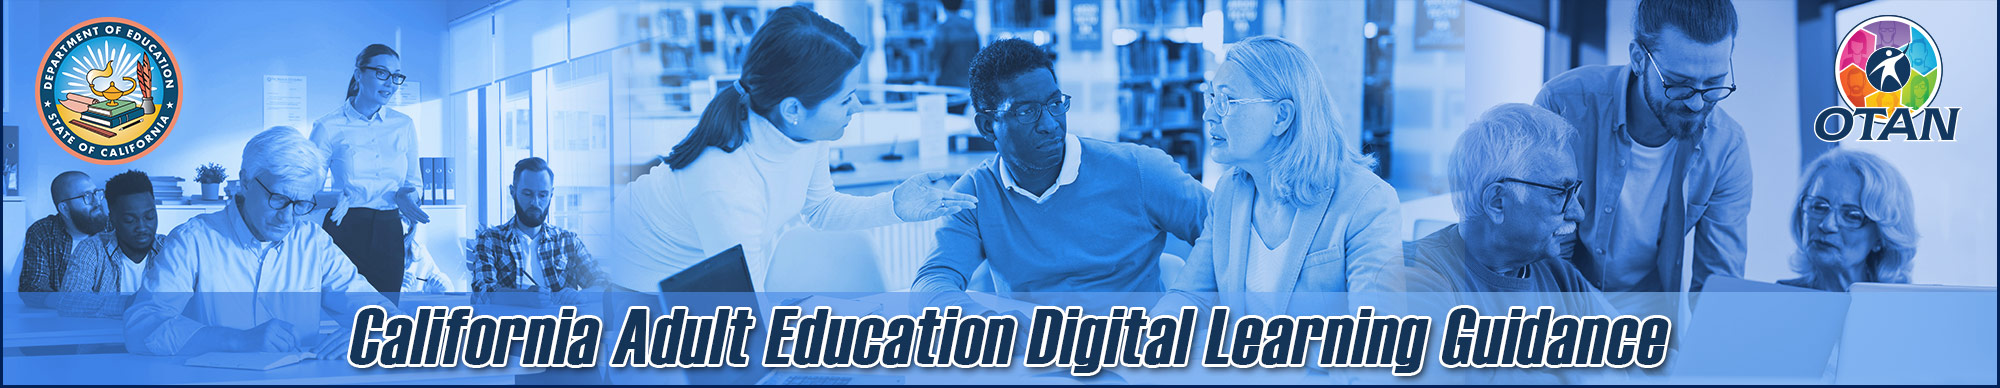 Digital Learning Guidance banner